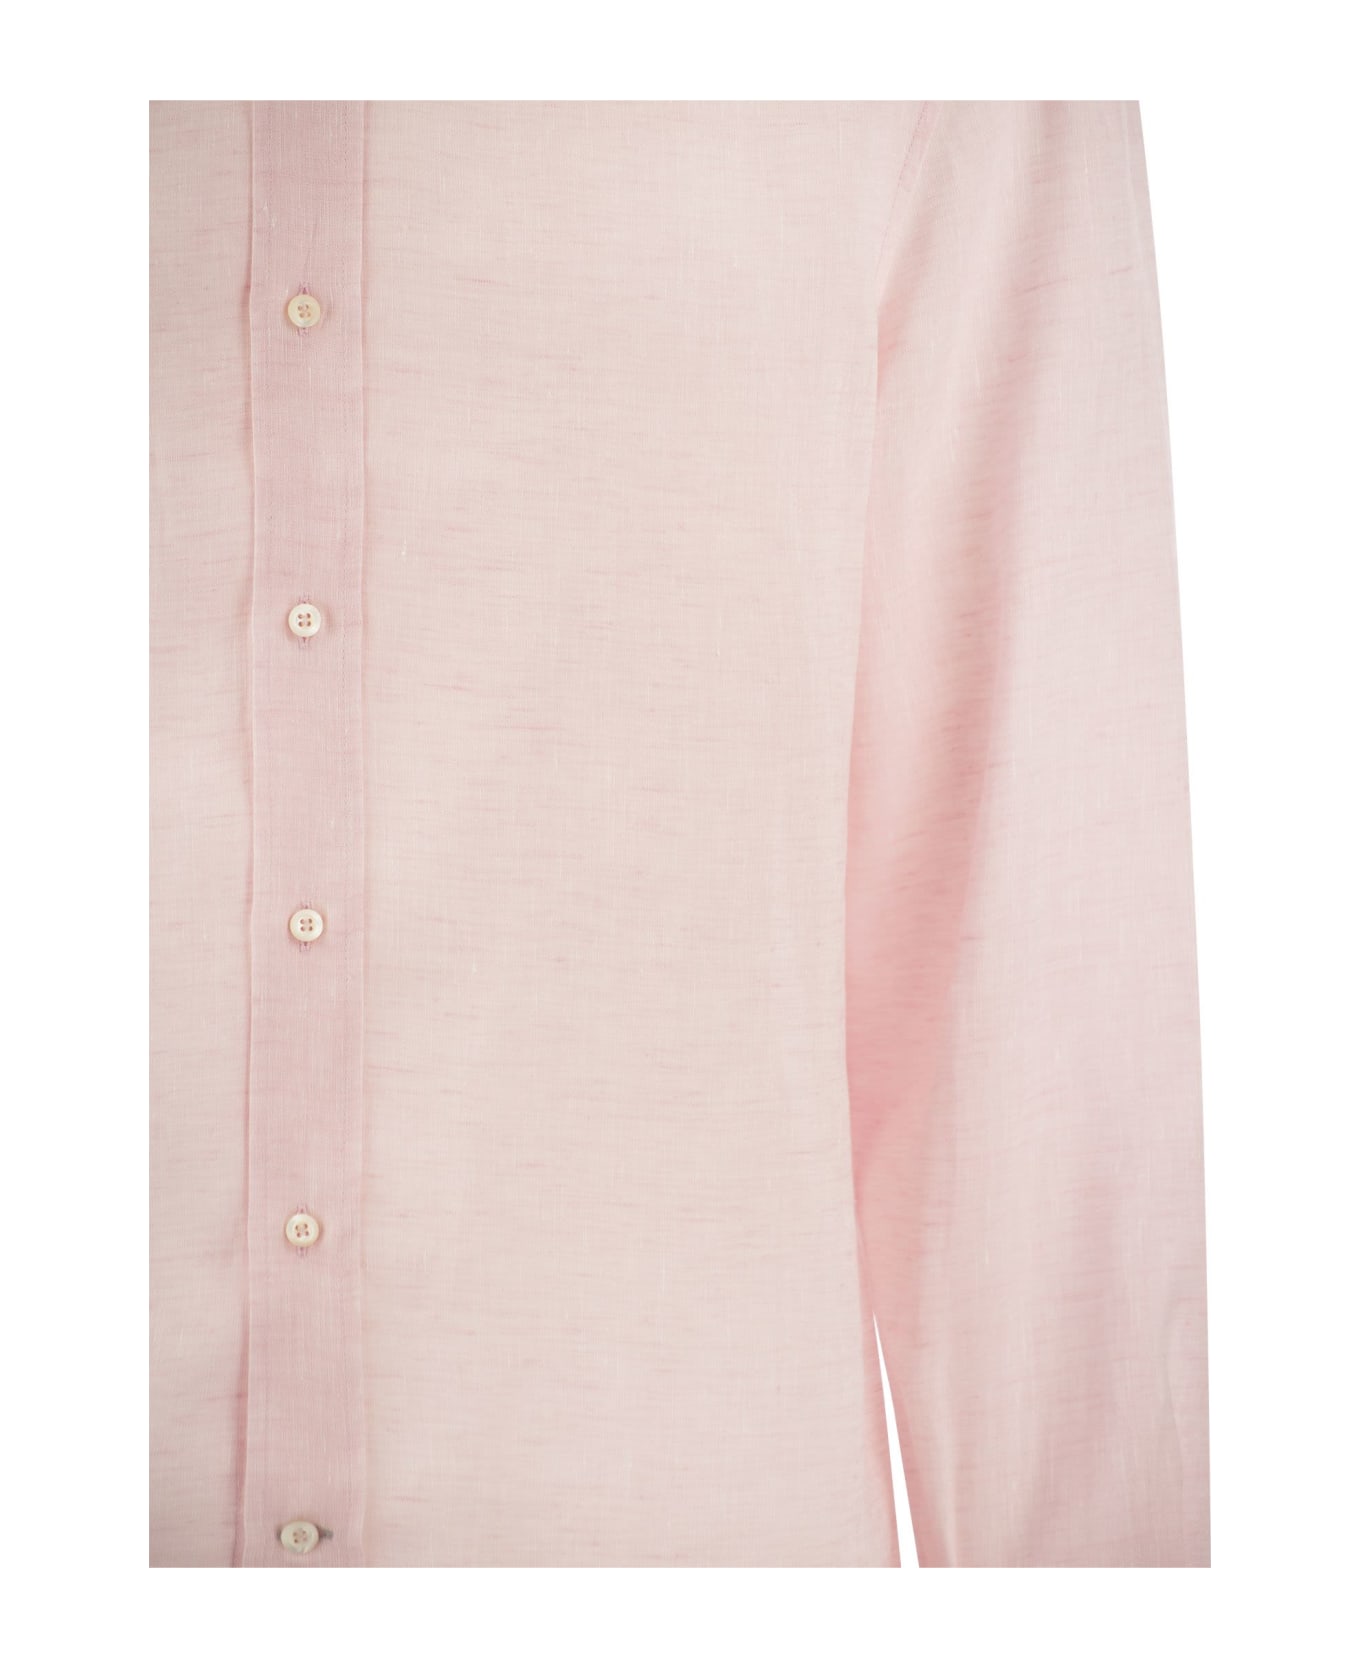 Brunello Cucinelli Linen Shirt - Pink シャツ